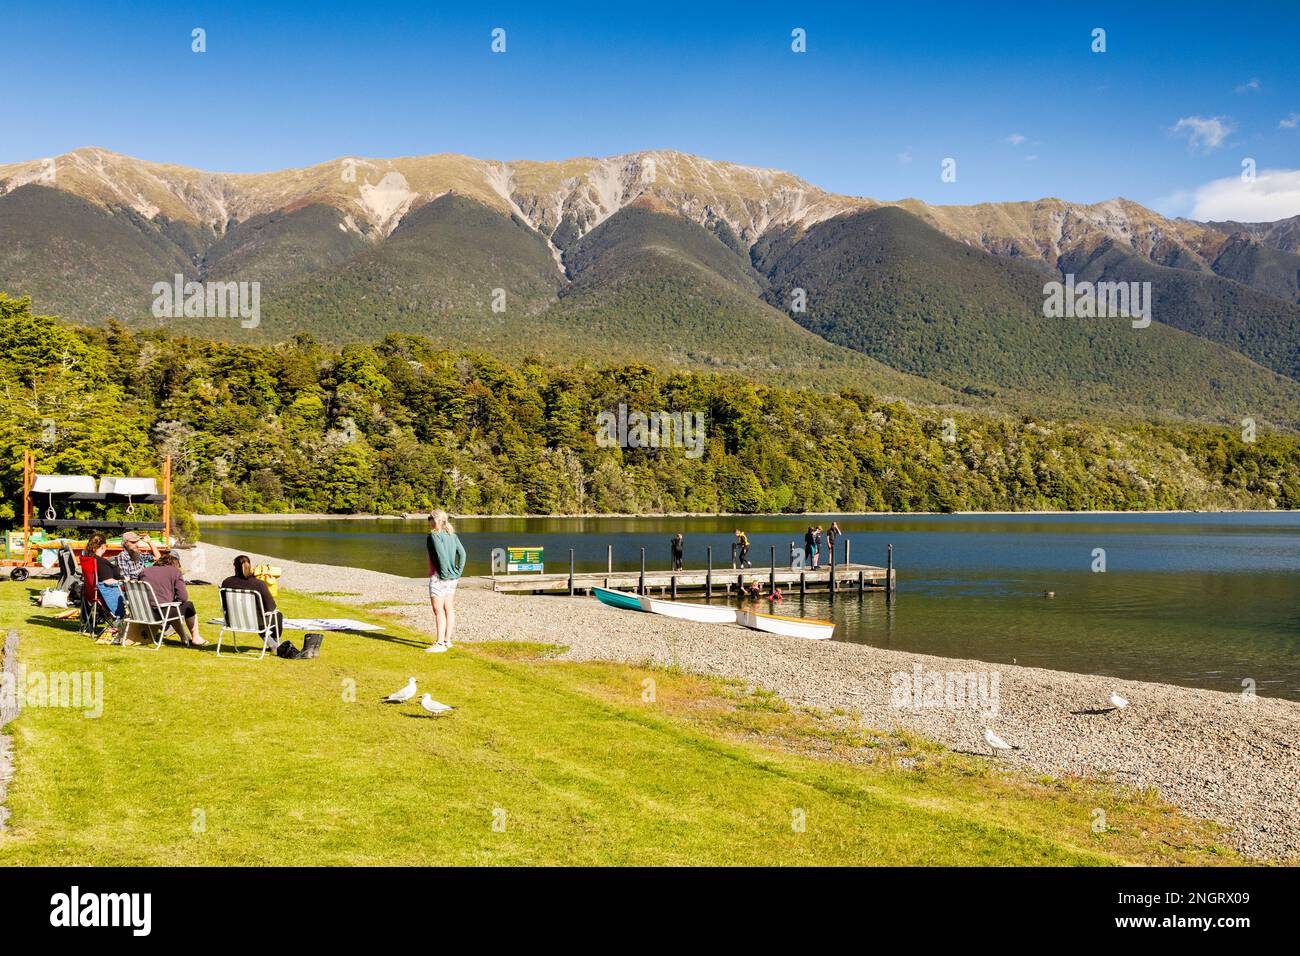 8. Dezember 2022: Lake Rotoiti, Nelson Lakes National Park, Neuseeland - Familien, die sich am Ufer des Lake Rotoiti entspannen, Kinder, die auf dem Pier spielen und Stockfoto